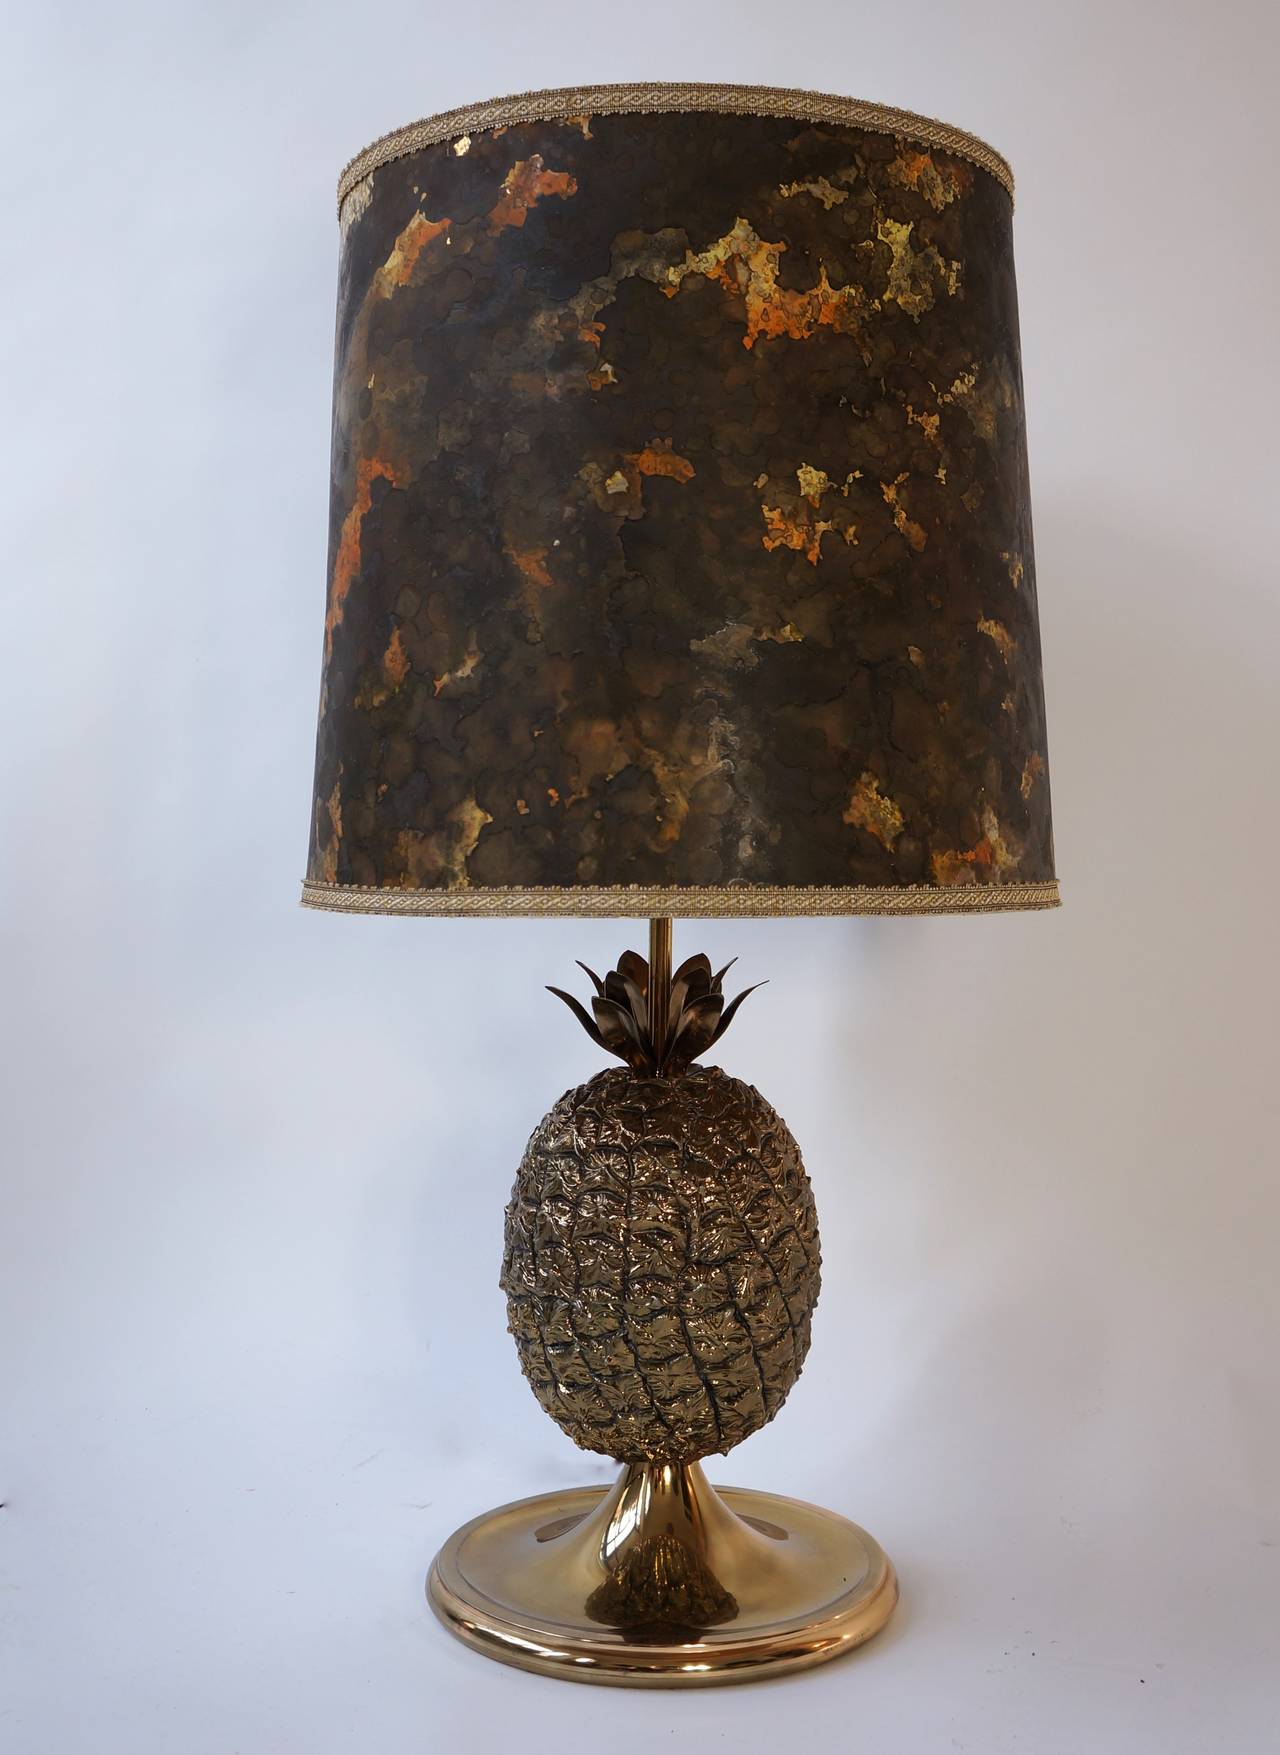 Grande lampe de table ananas de style Maison Jansen de France. 
Revêtement métallique doré sur le corps en acrylique, avec de beaux détails. 
Feuilles de métal.

Période : 1960-1970s.